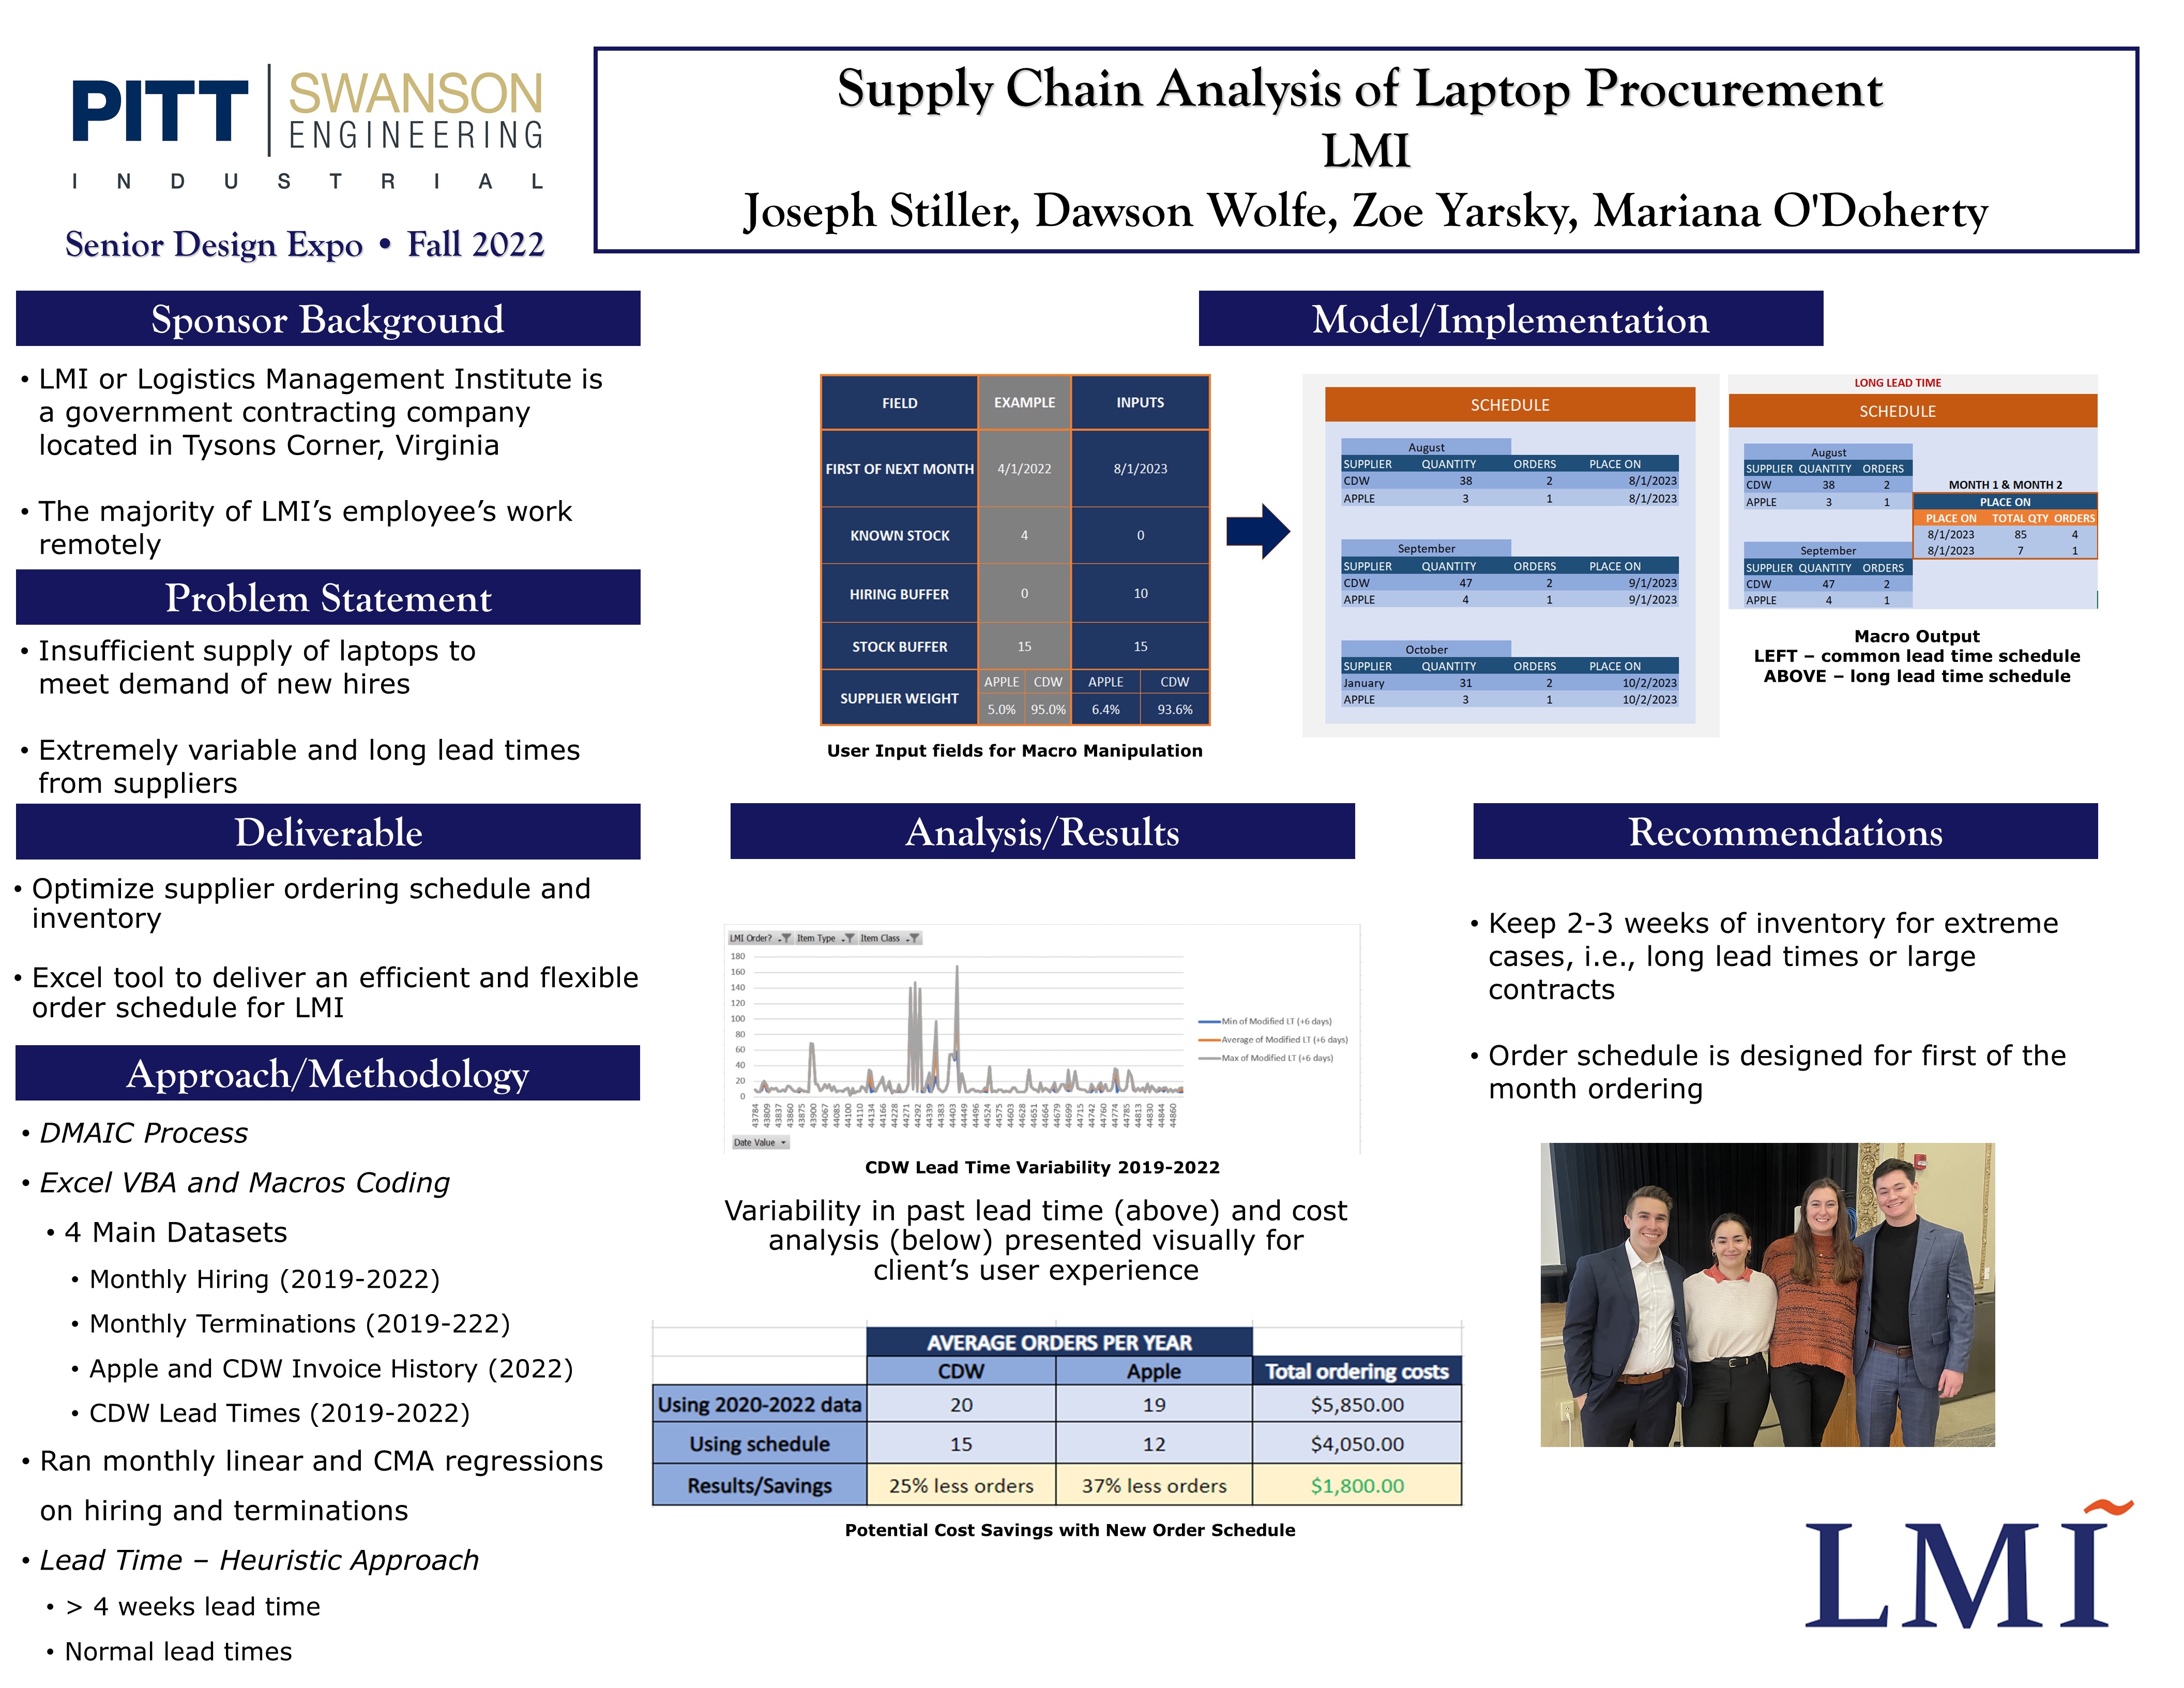 Supply Chain Analysis of Laptop Procurement research poster